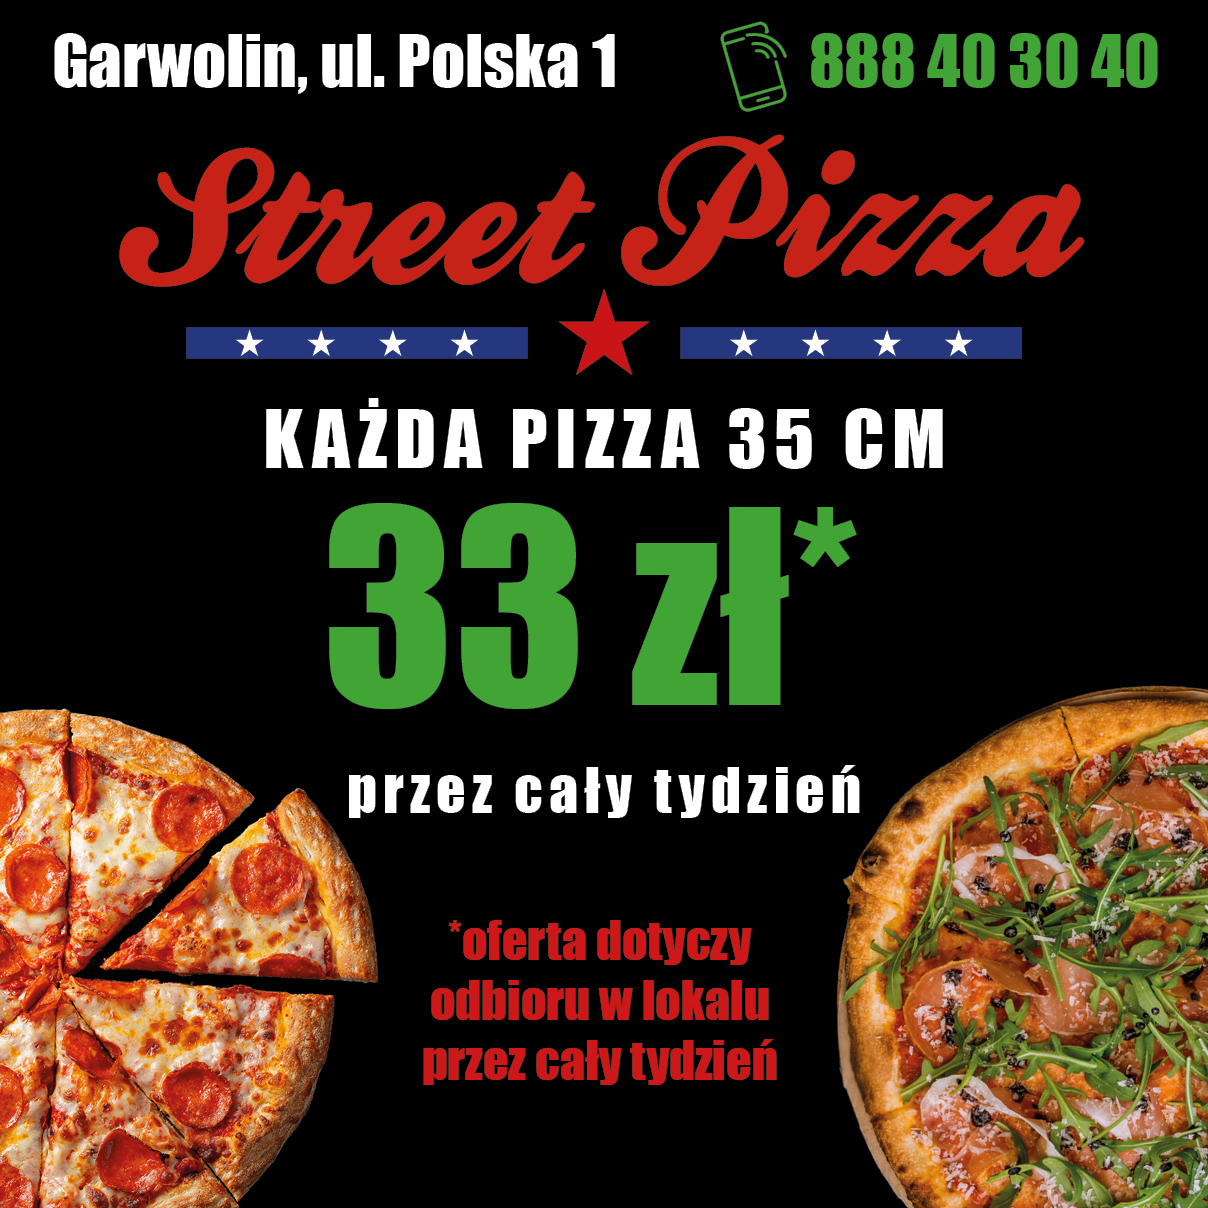 M.A.SZ.- street pizza rectangle